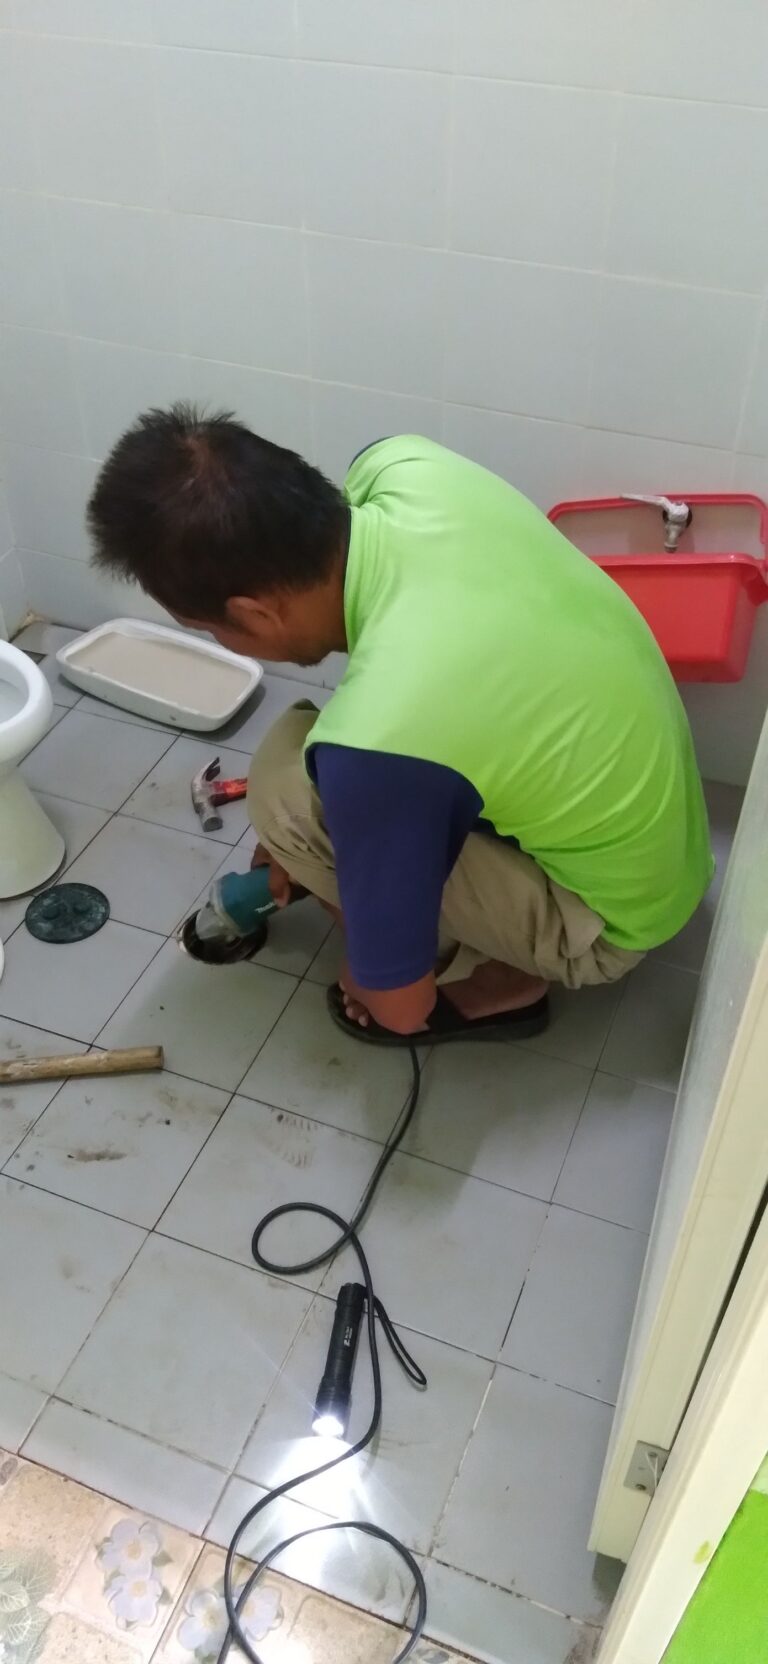 วันที่ 8 สิงหาคม 2566 นายสมชาย ศรีนาก สมาชิกสภาเทศบาลตำบลสีมามงคล และกองช่าง ซ่อมแซมแก้ไขห้องน้ำศูนย์พัฒนาเด็กเล็กเทศบาลตำบลสีมามงคล (โรงเรียนเบทาโกรวิทยา)